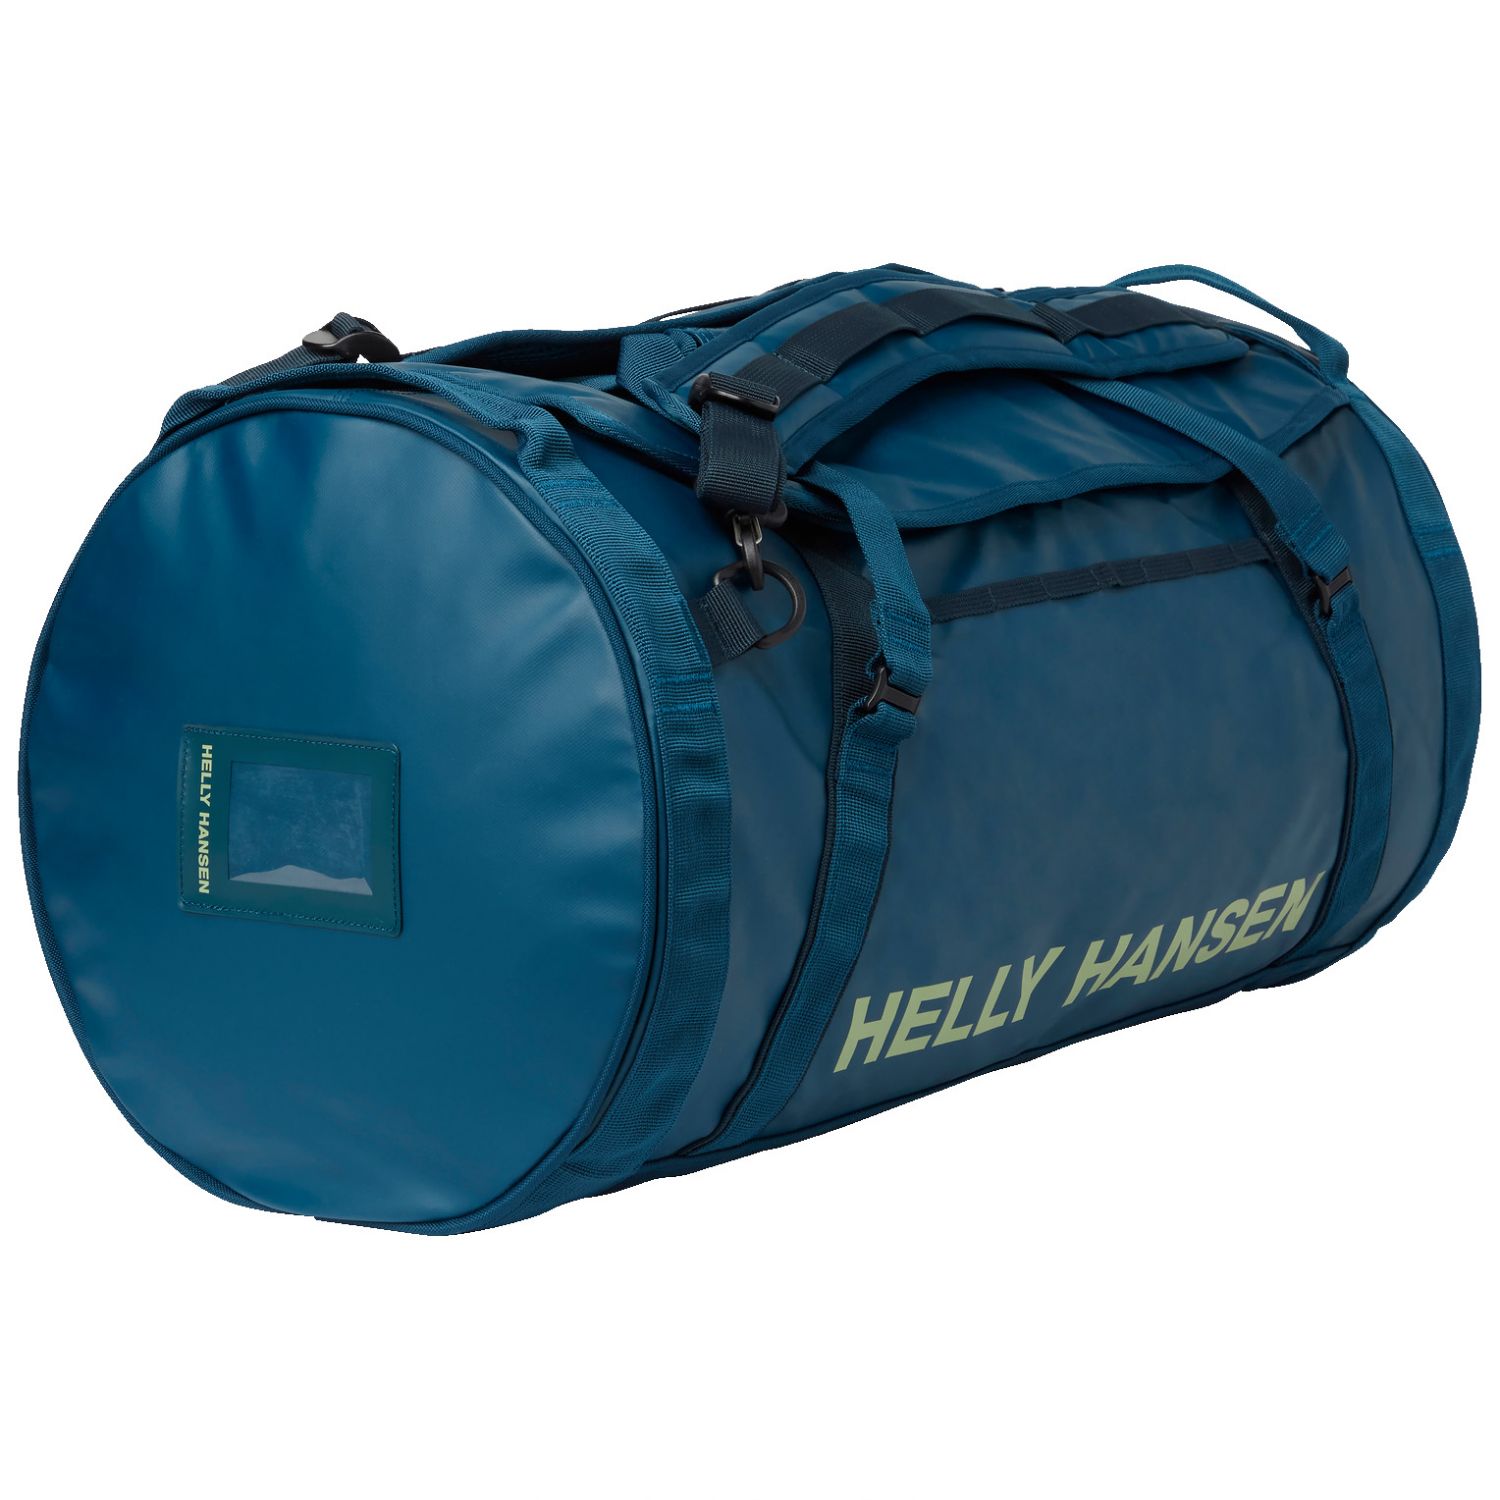 Helly Hansen HH Duffel Bag 2, 50L, deep dive